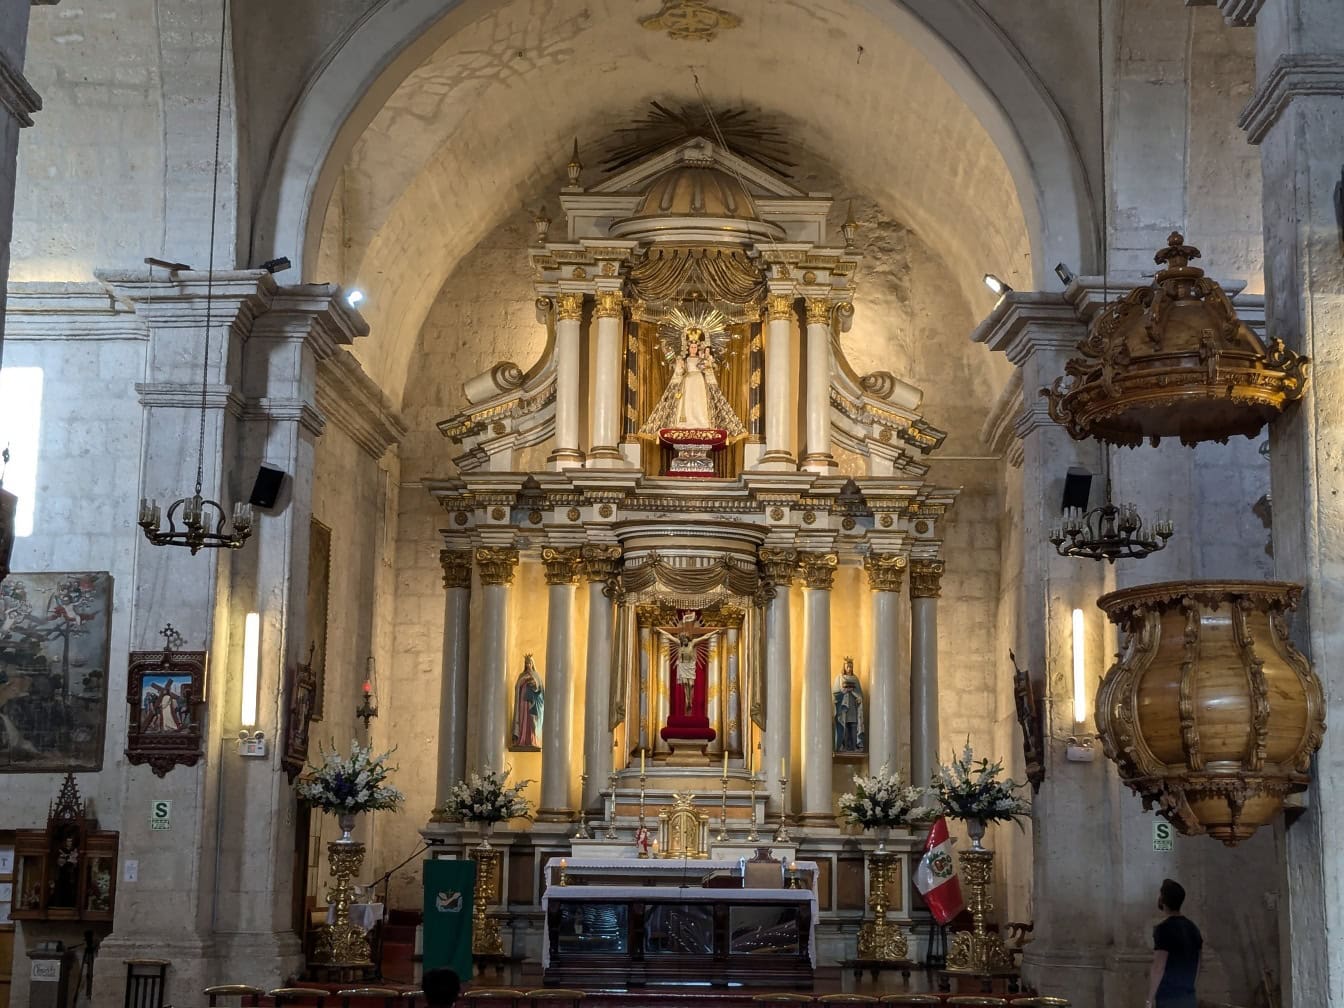 Bên trong nhà thờ Công giáo ở Peru với một bức tượng trên bàn thờ trang trí công phu